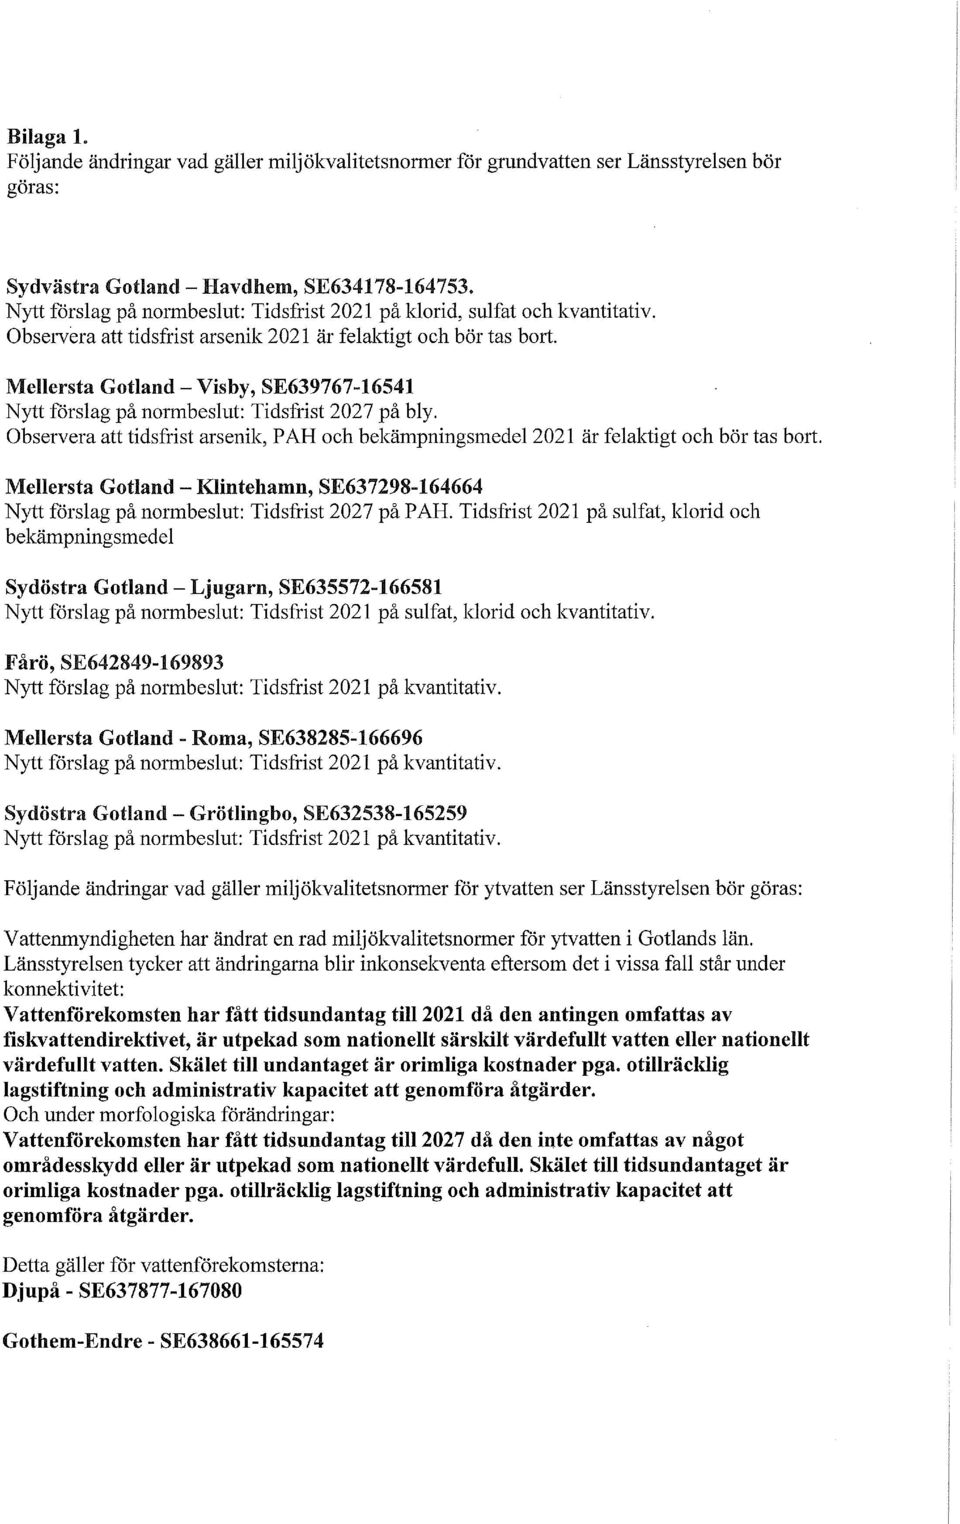 Mellersta Gotland- Visby, SE639767-16541 Nytt förslag på normbeslut Tidsfrist 2027 på bly. Observera att tidsfrist arsenik, P AH och bekämpningsmedel 2021 är felaktigt och bör tas bort.